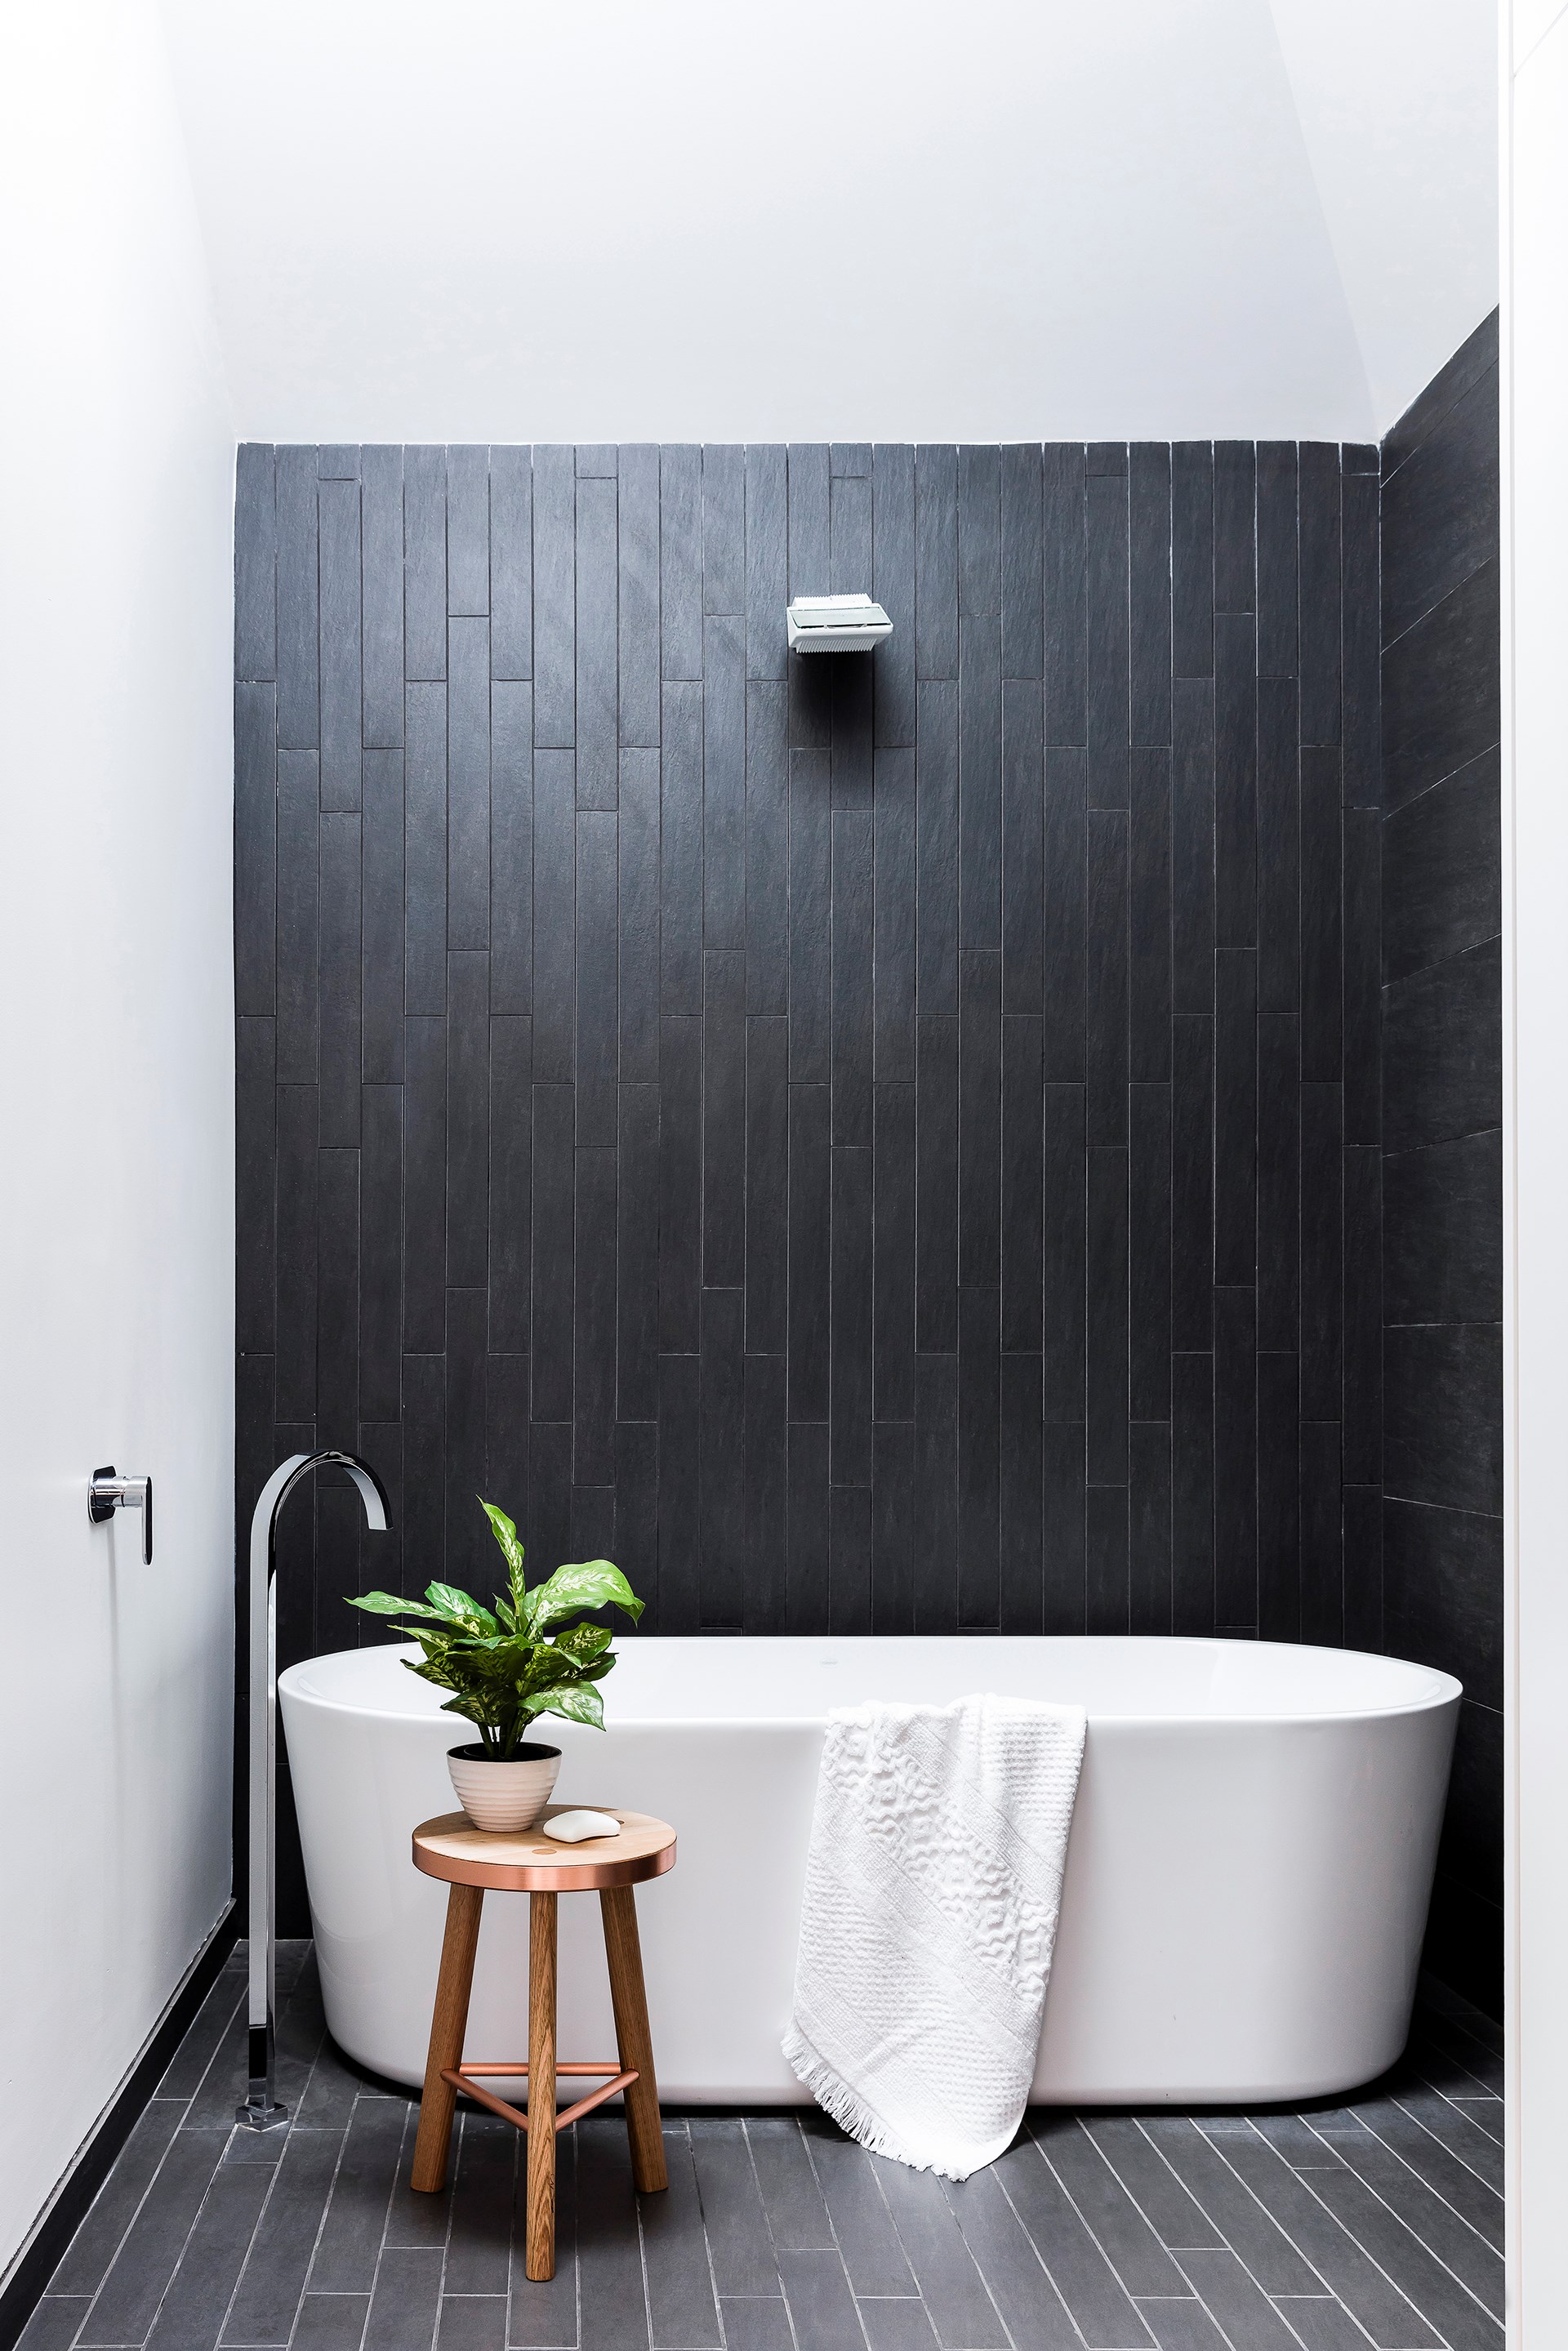 Tuyệt chiêu chọn gạch nhà tắm “chuẩn không cần chỉnh” được tiết lộ từ chuyên gia - Ảnh 3.